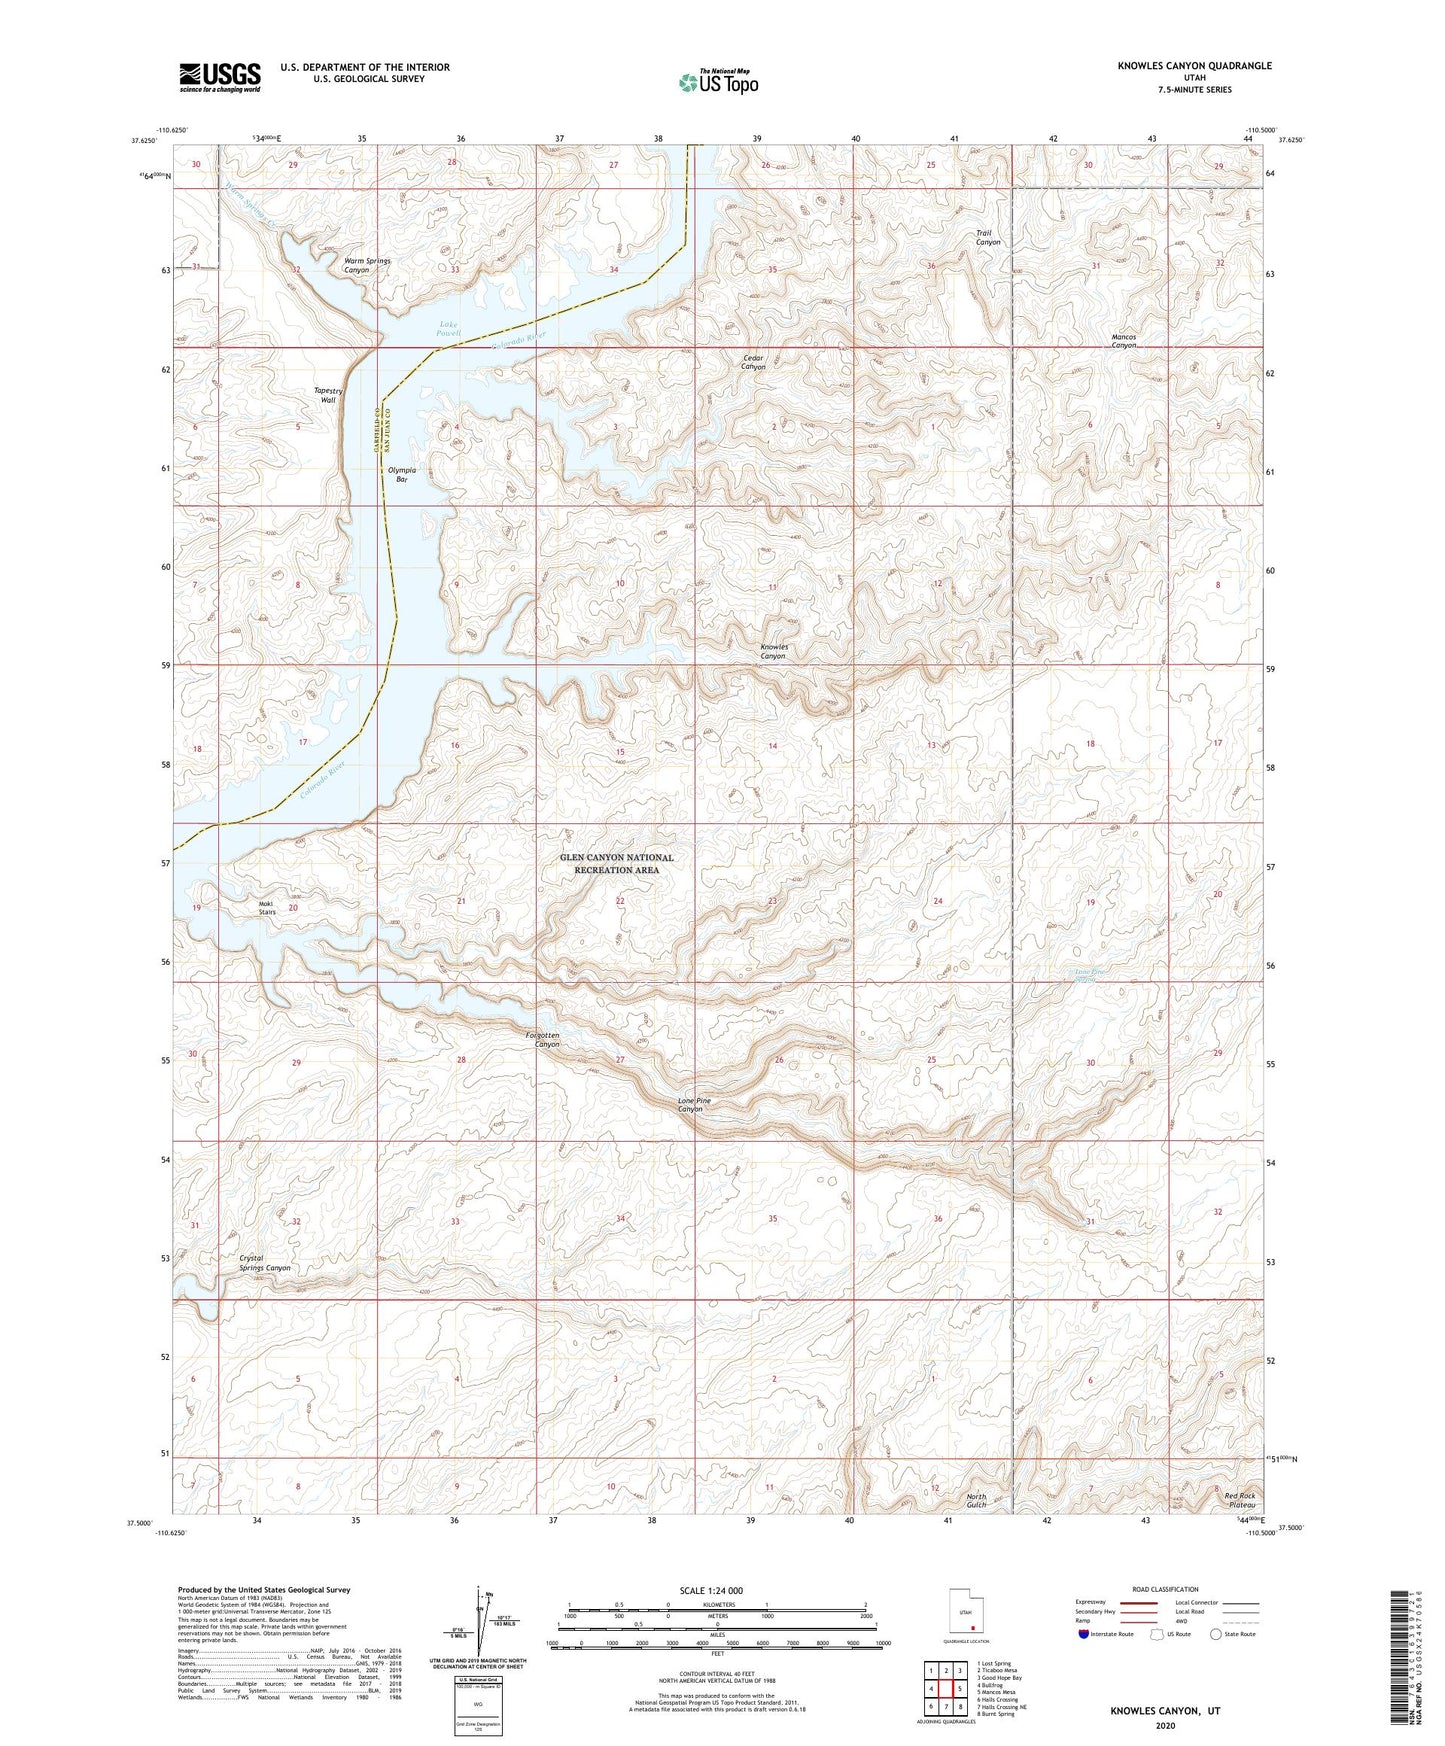 Knowles Canyon Utah US Topo Map Image